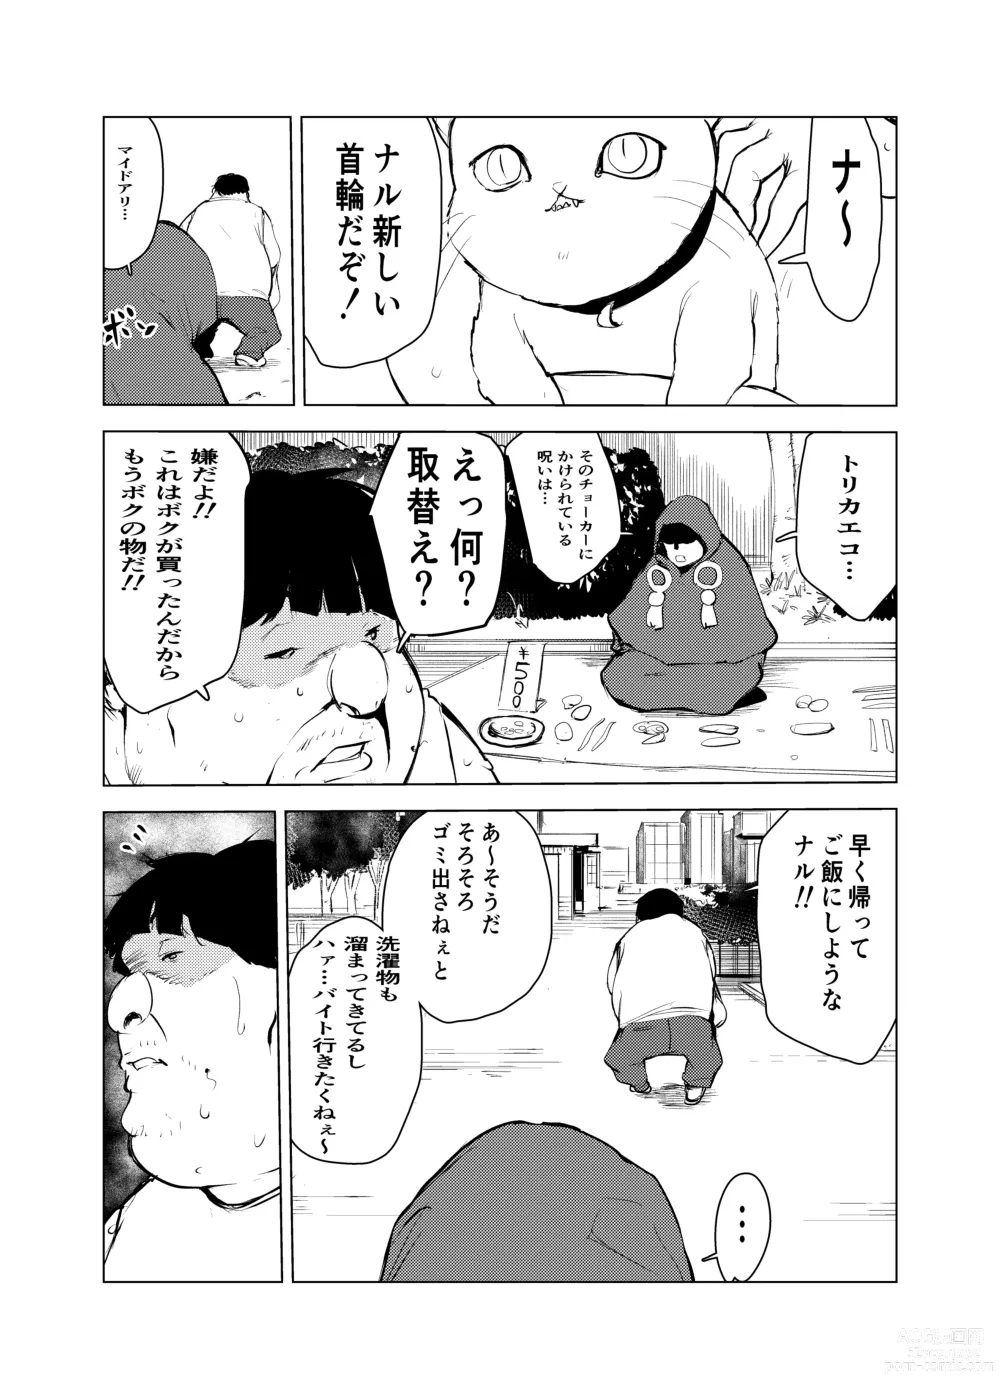 Page 7 of doujinshi Neko no Ongaeshi